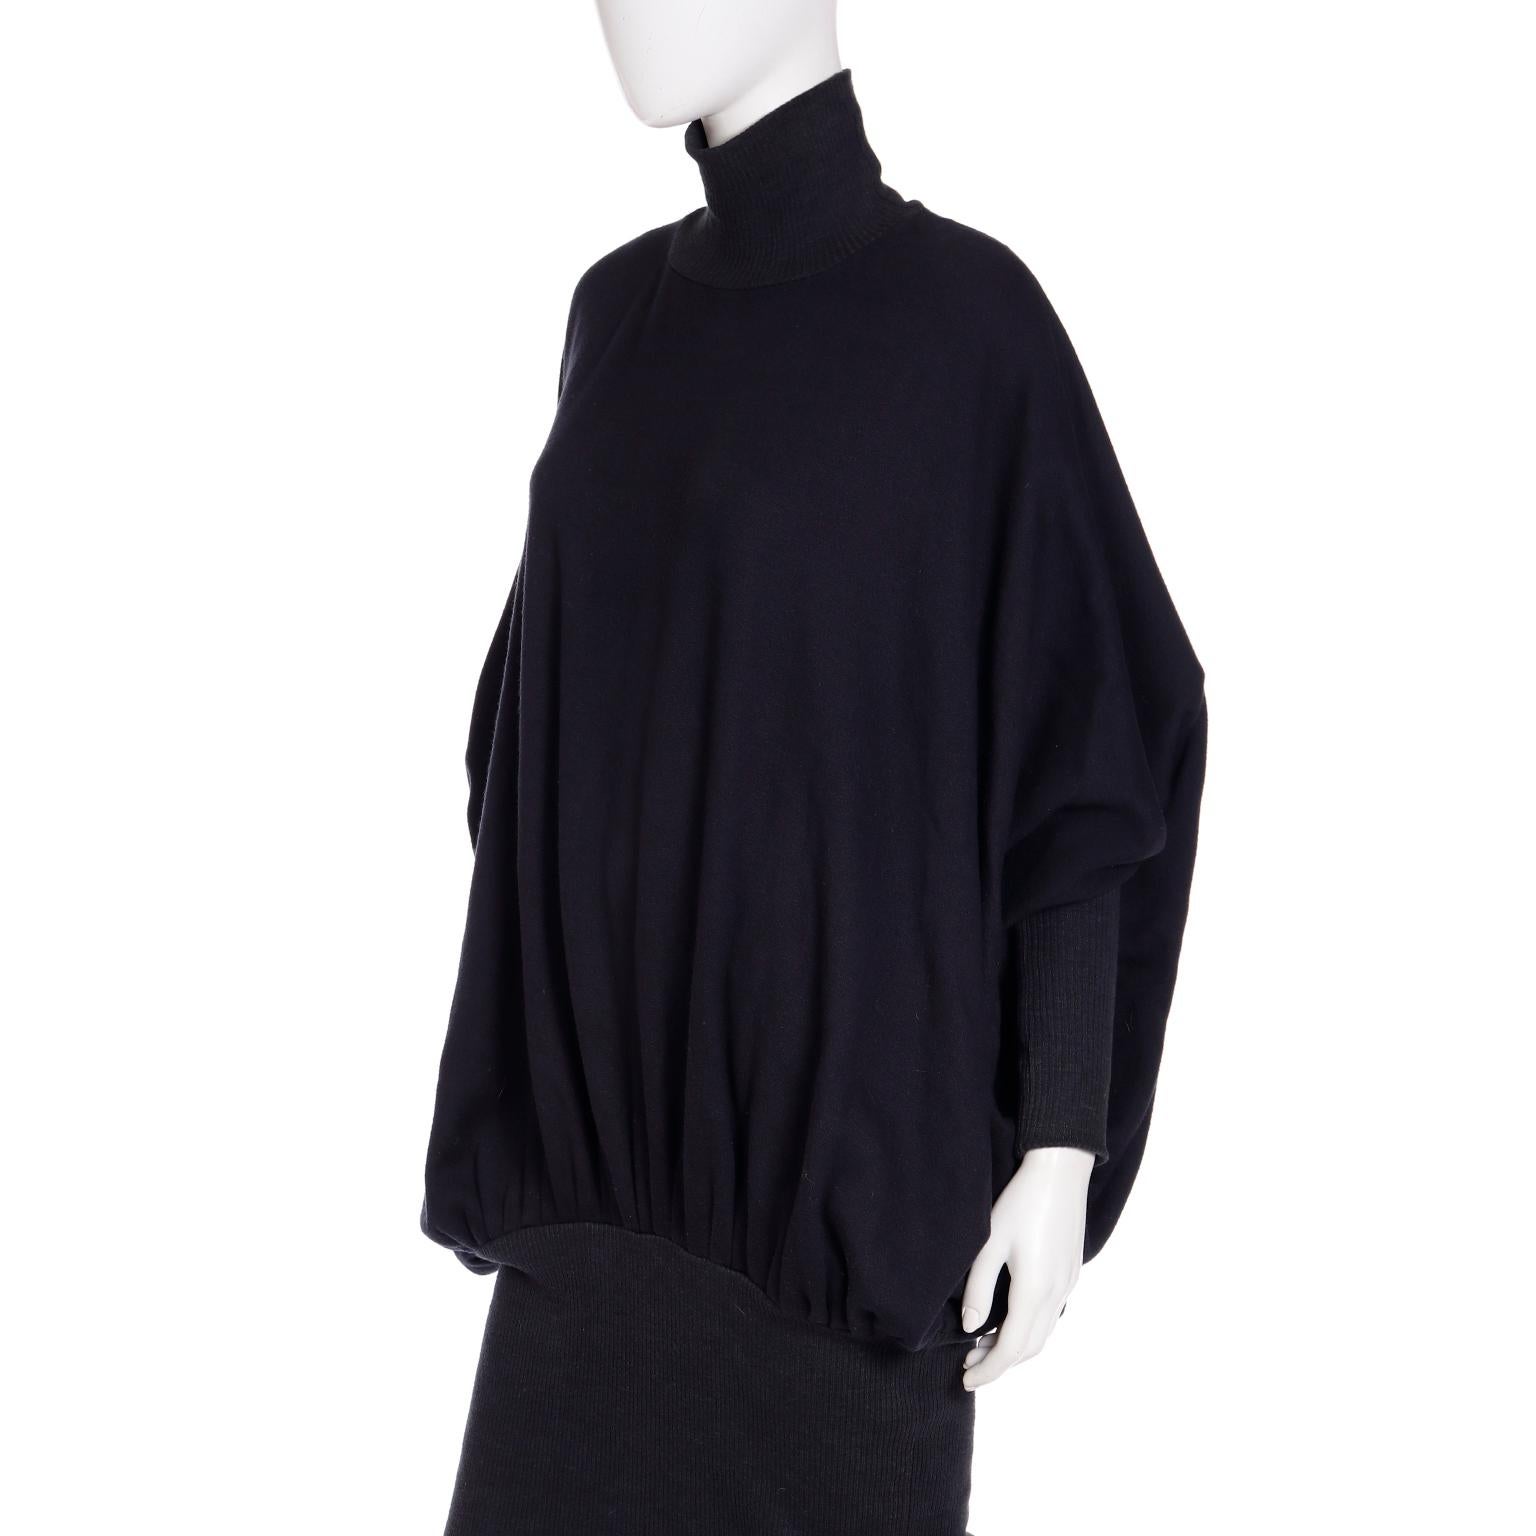 Norma Kamali 1985 Vintage Sweatshirt Material Dress in the MET 4